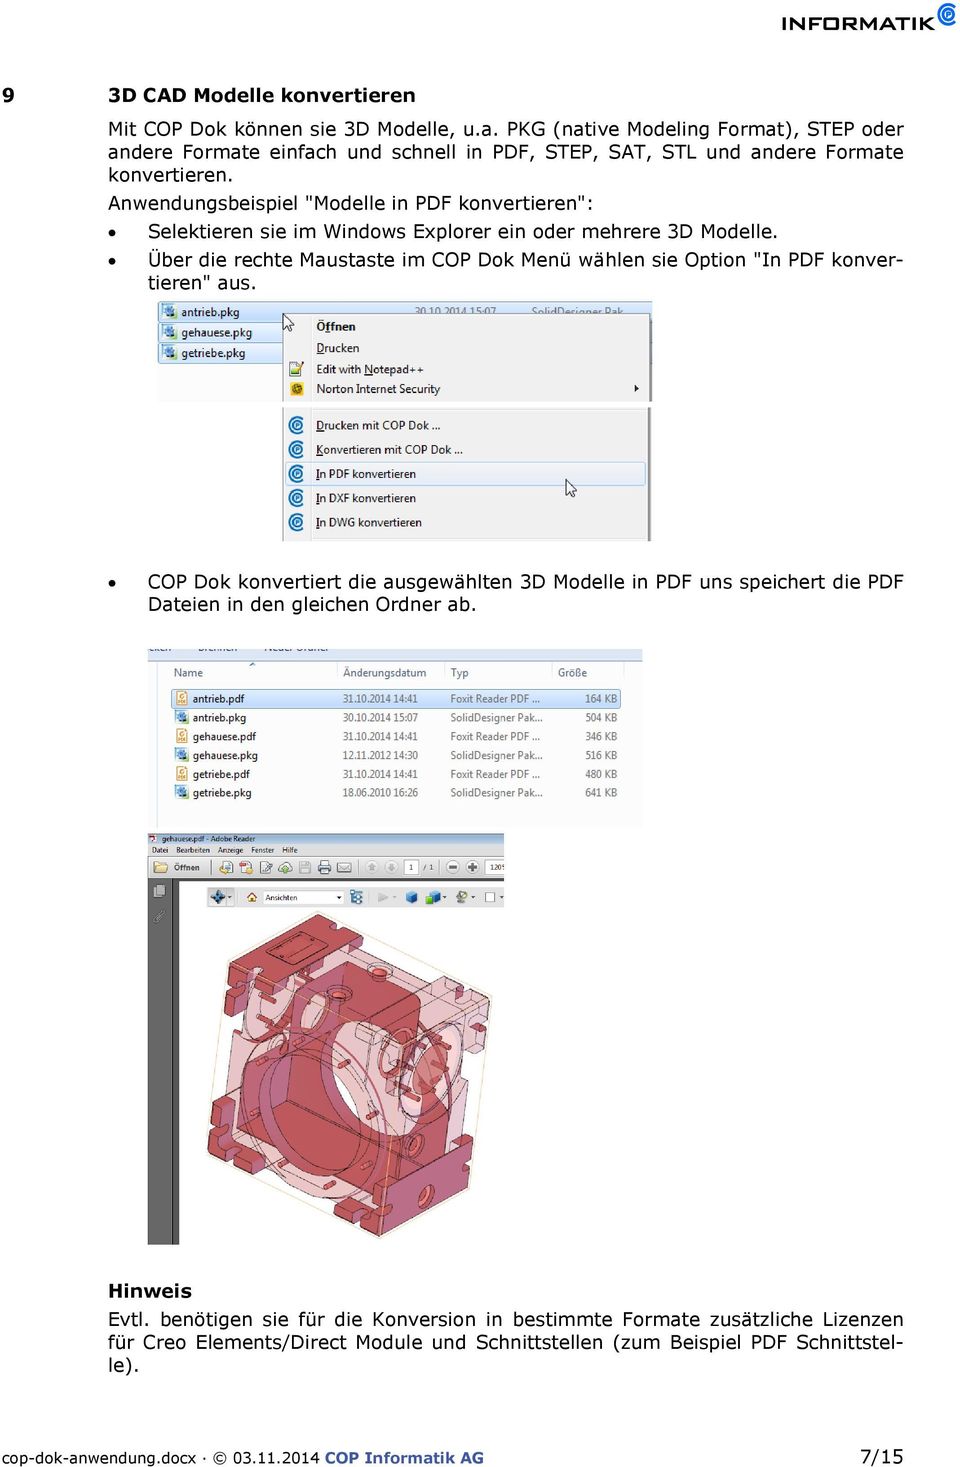 Anwendungsbeispiel "Modelle in PDF konvertieren": Selektieren sie im Windows Explorer ein oder mehrere 3D Modelle.